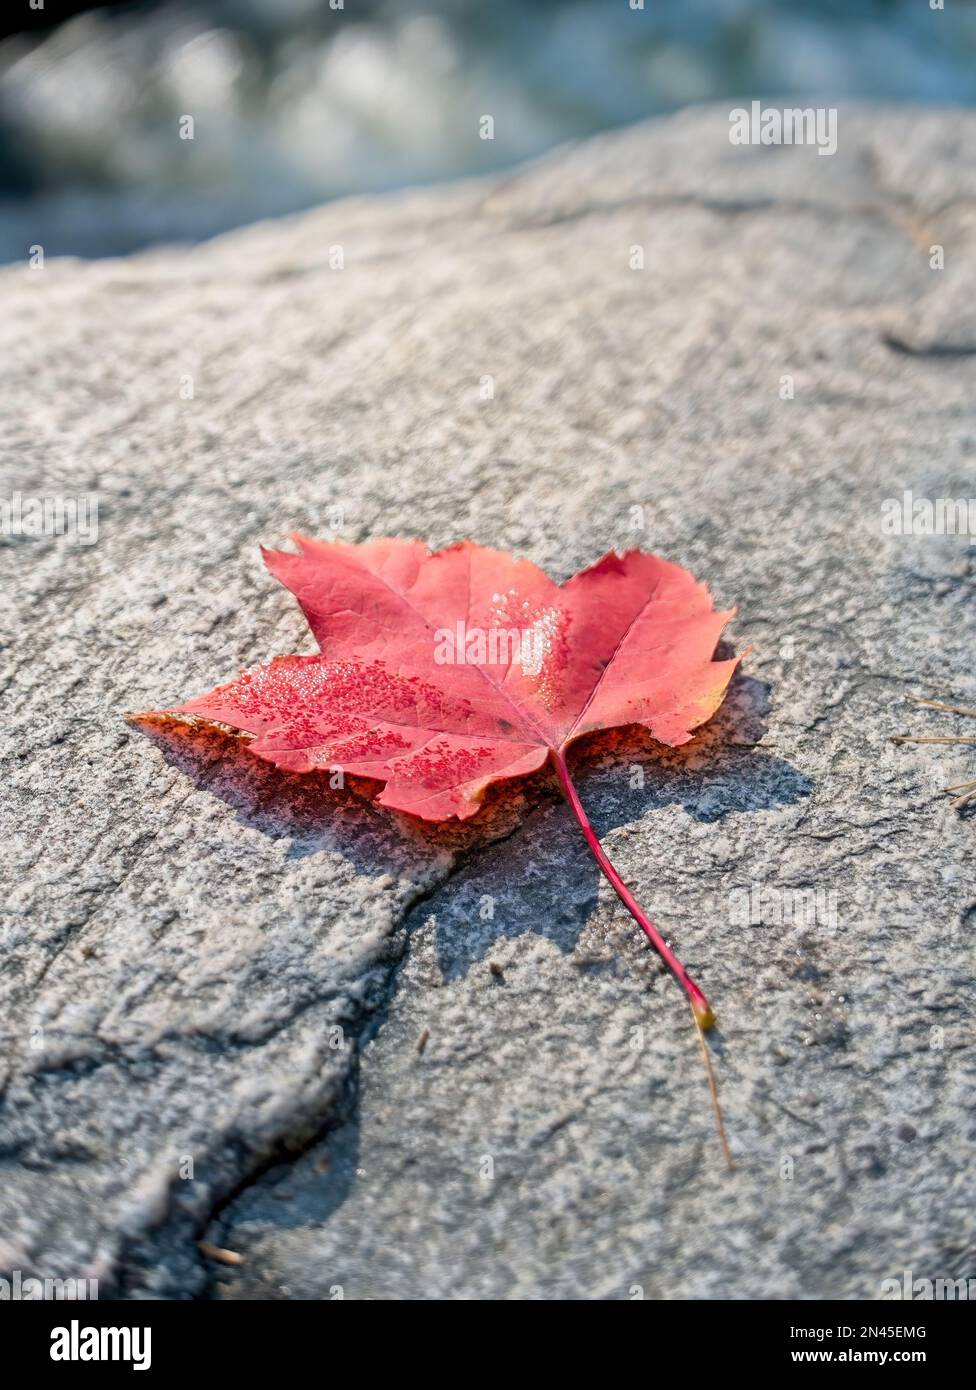 Single autumn red maple leaf on a rock. Feuille d'érable rouge sur un rocher. Stock Photo